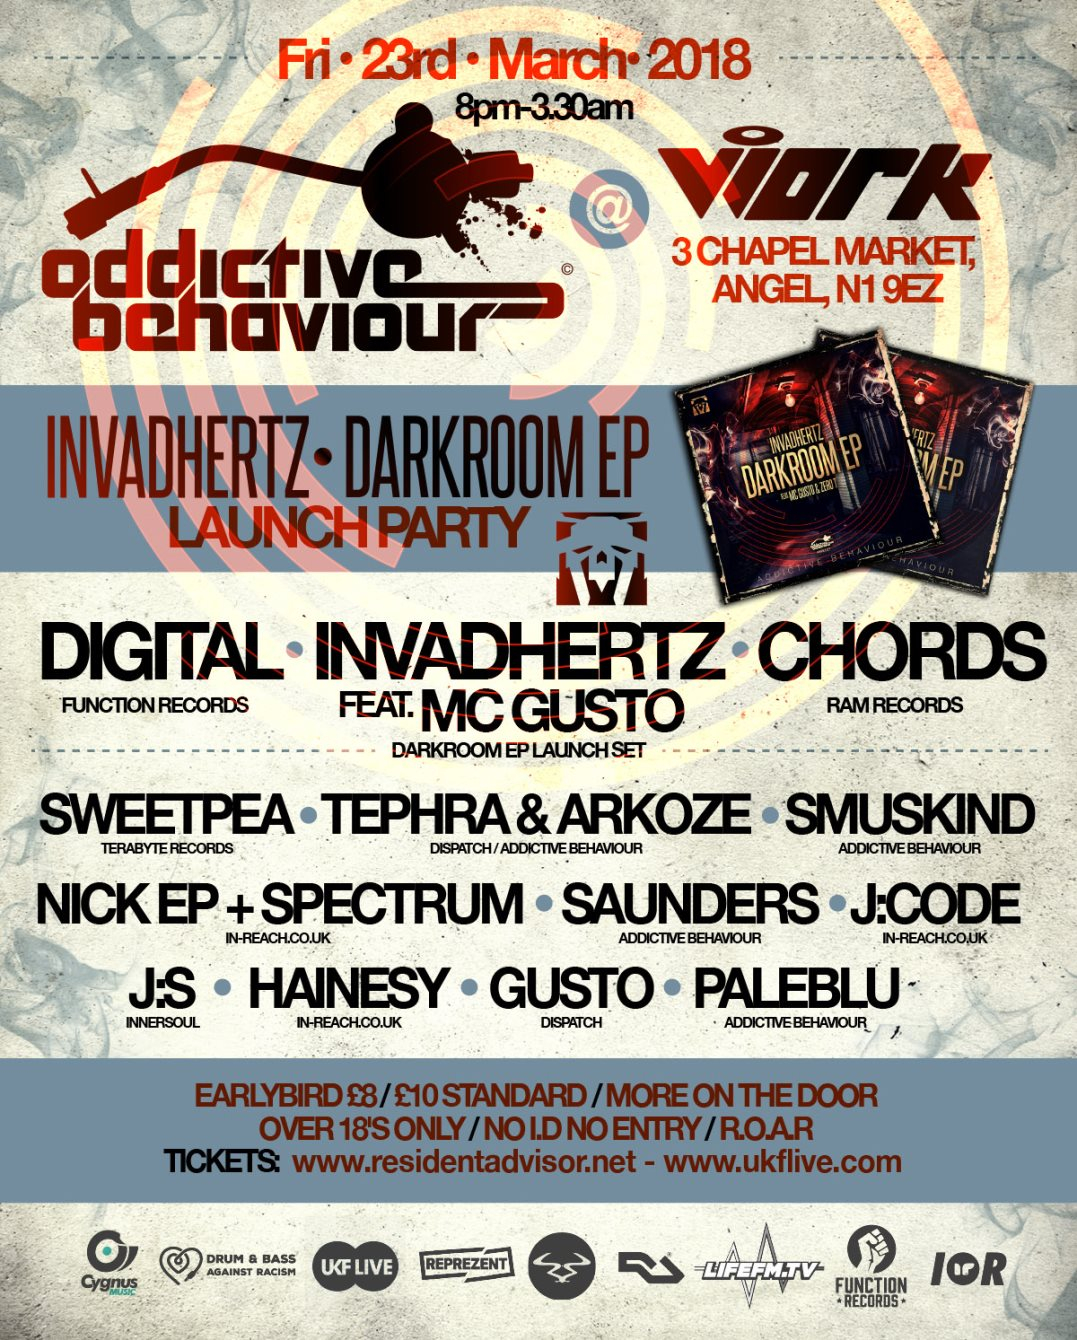 Addictive Behaviour - Darkroom EP Launch Party - Flyer front